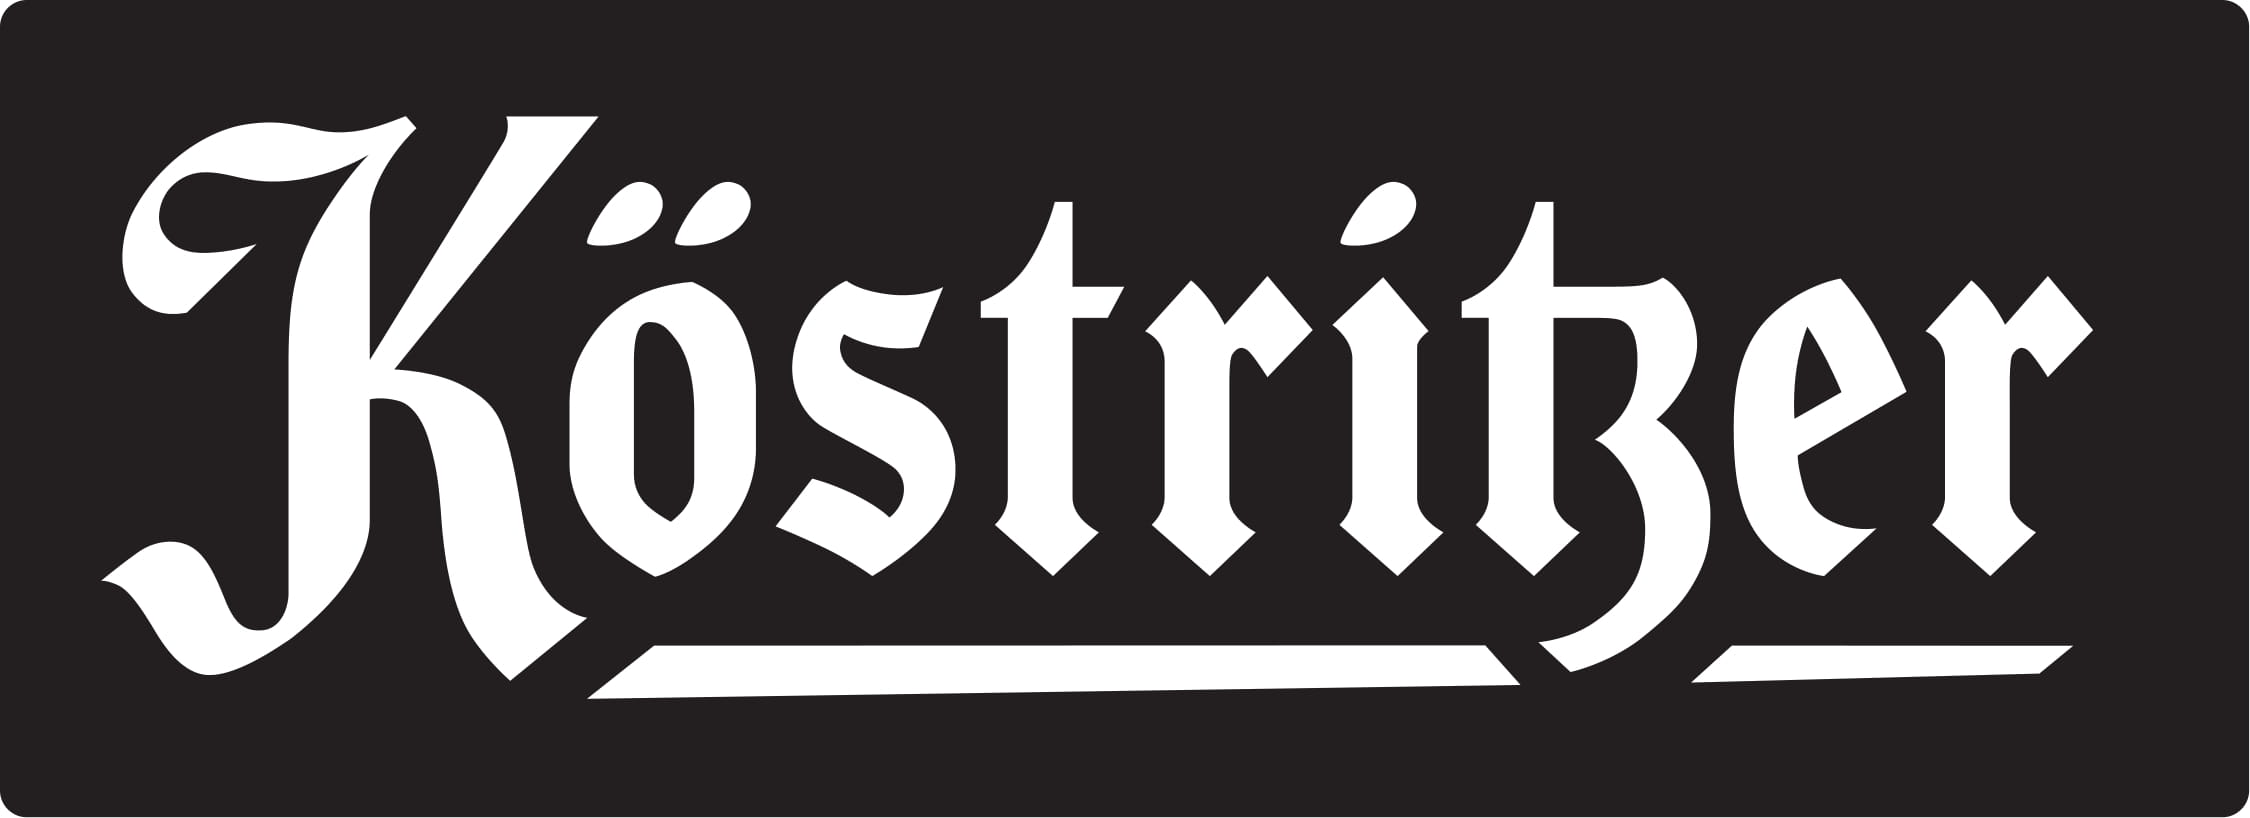 Koestritzer_Schriftmarke_Logo_1c-1